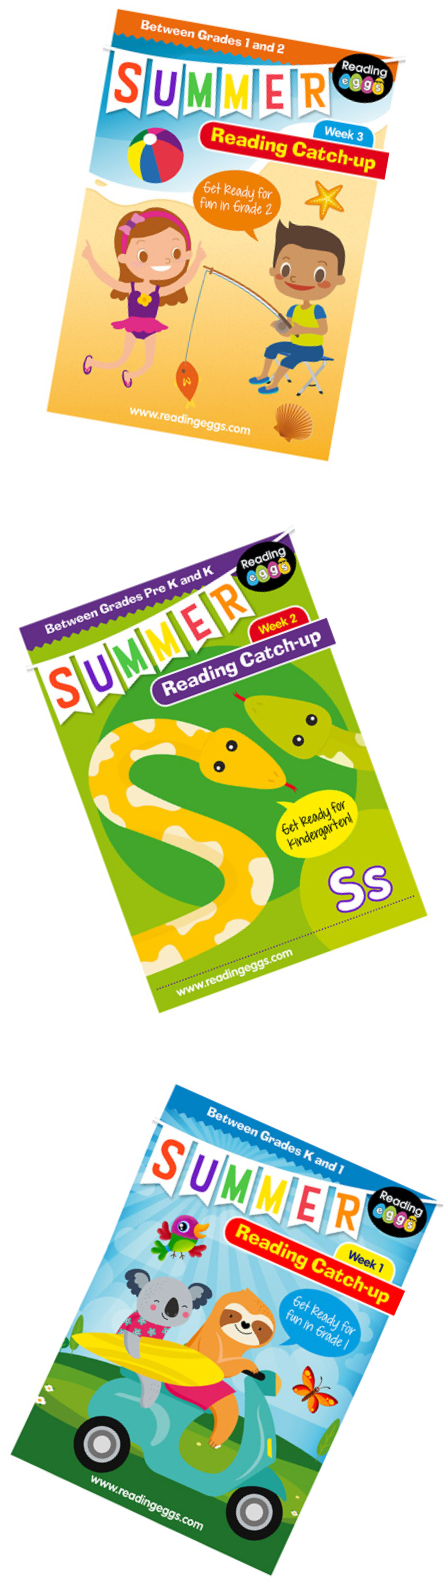 virtual summer reading program